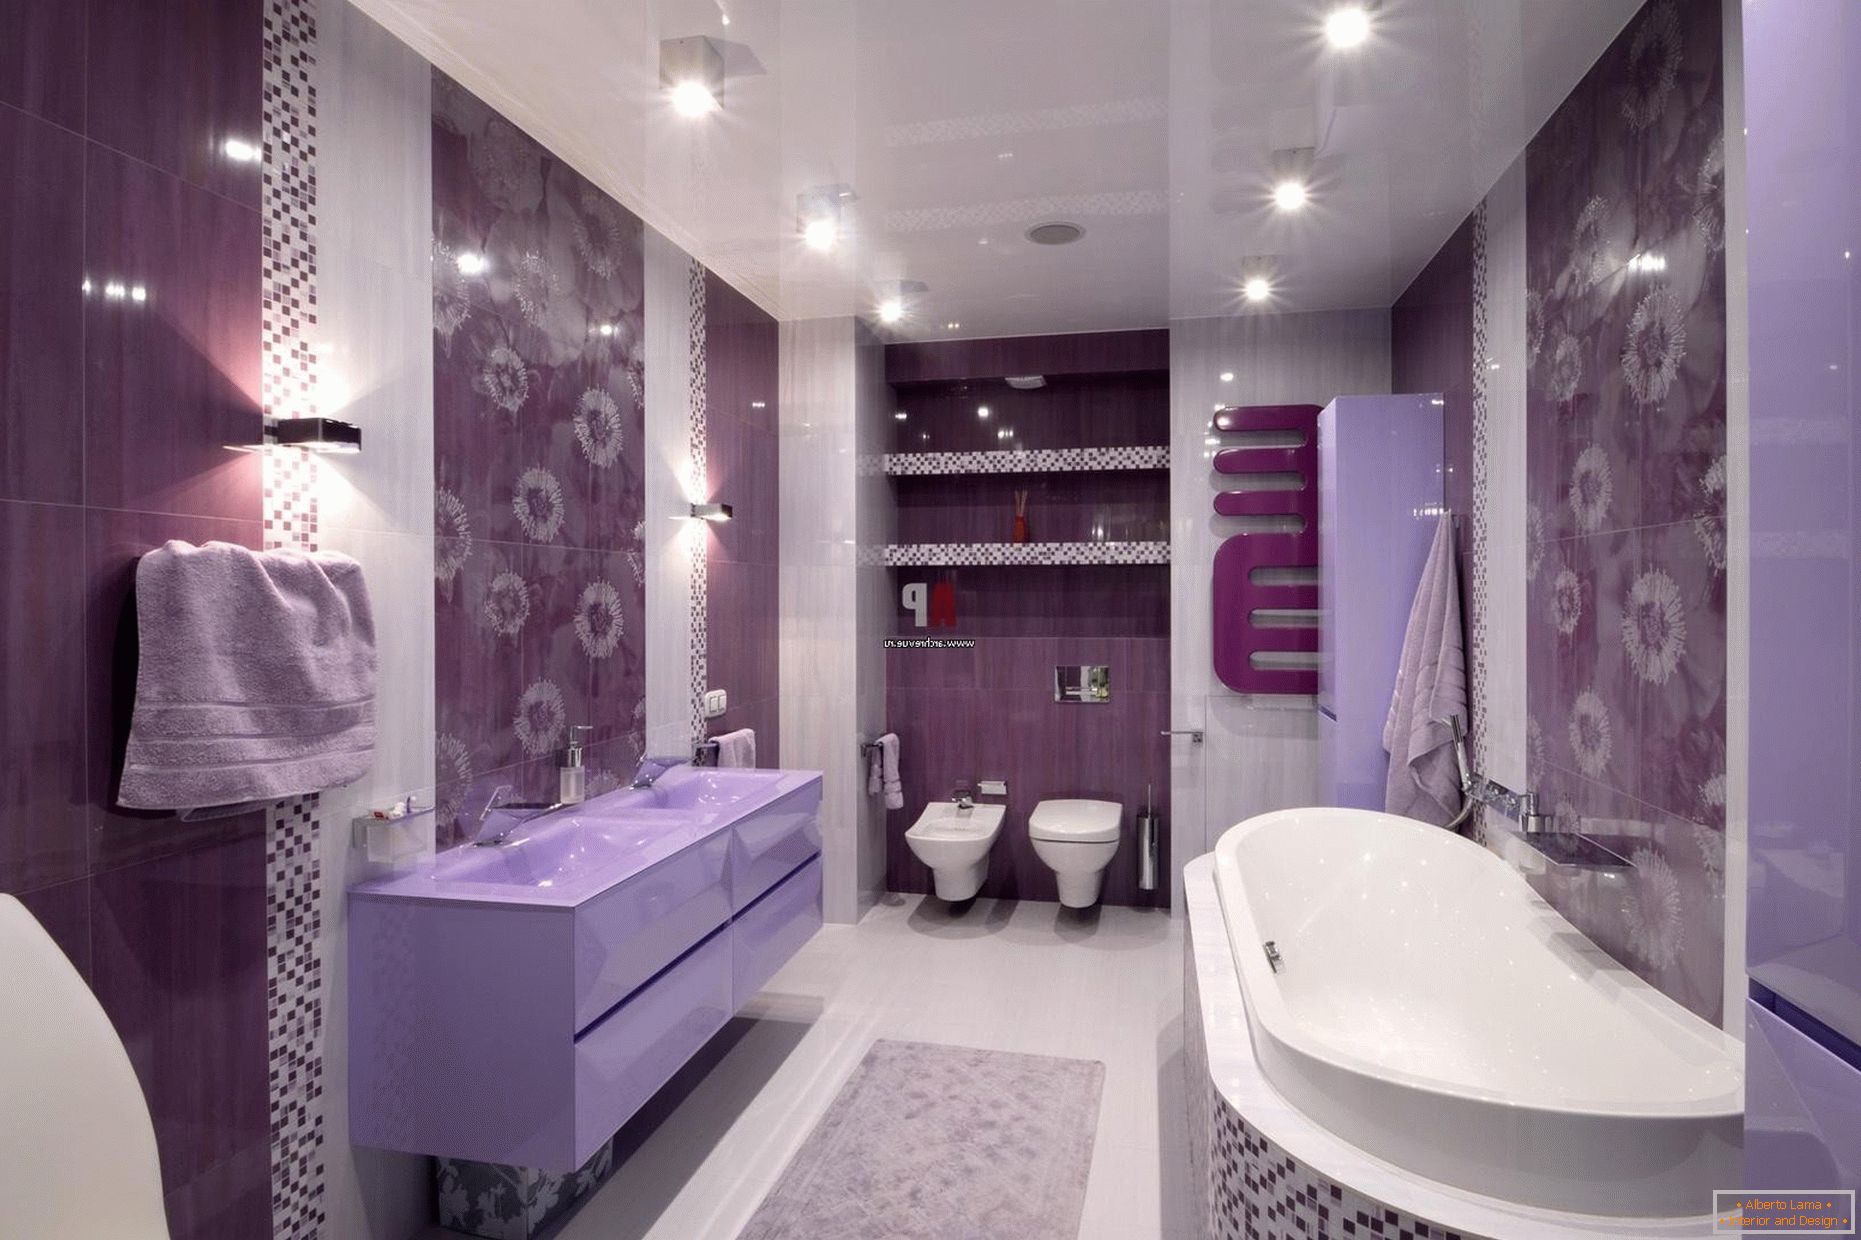 A fürdőszoba lilás virágainak luxus designja